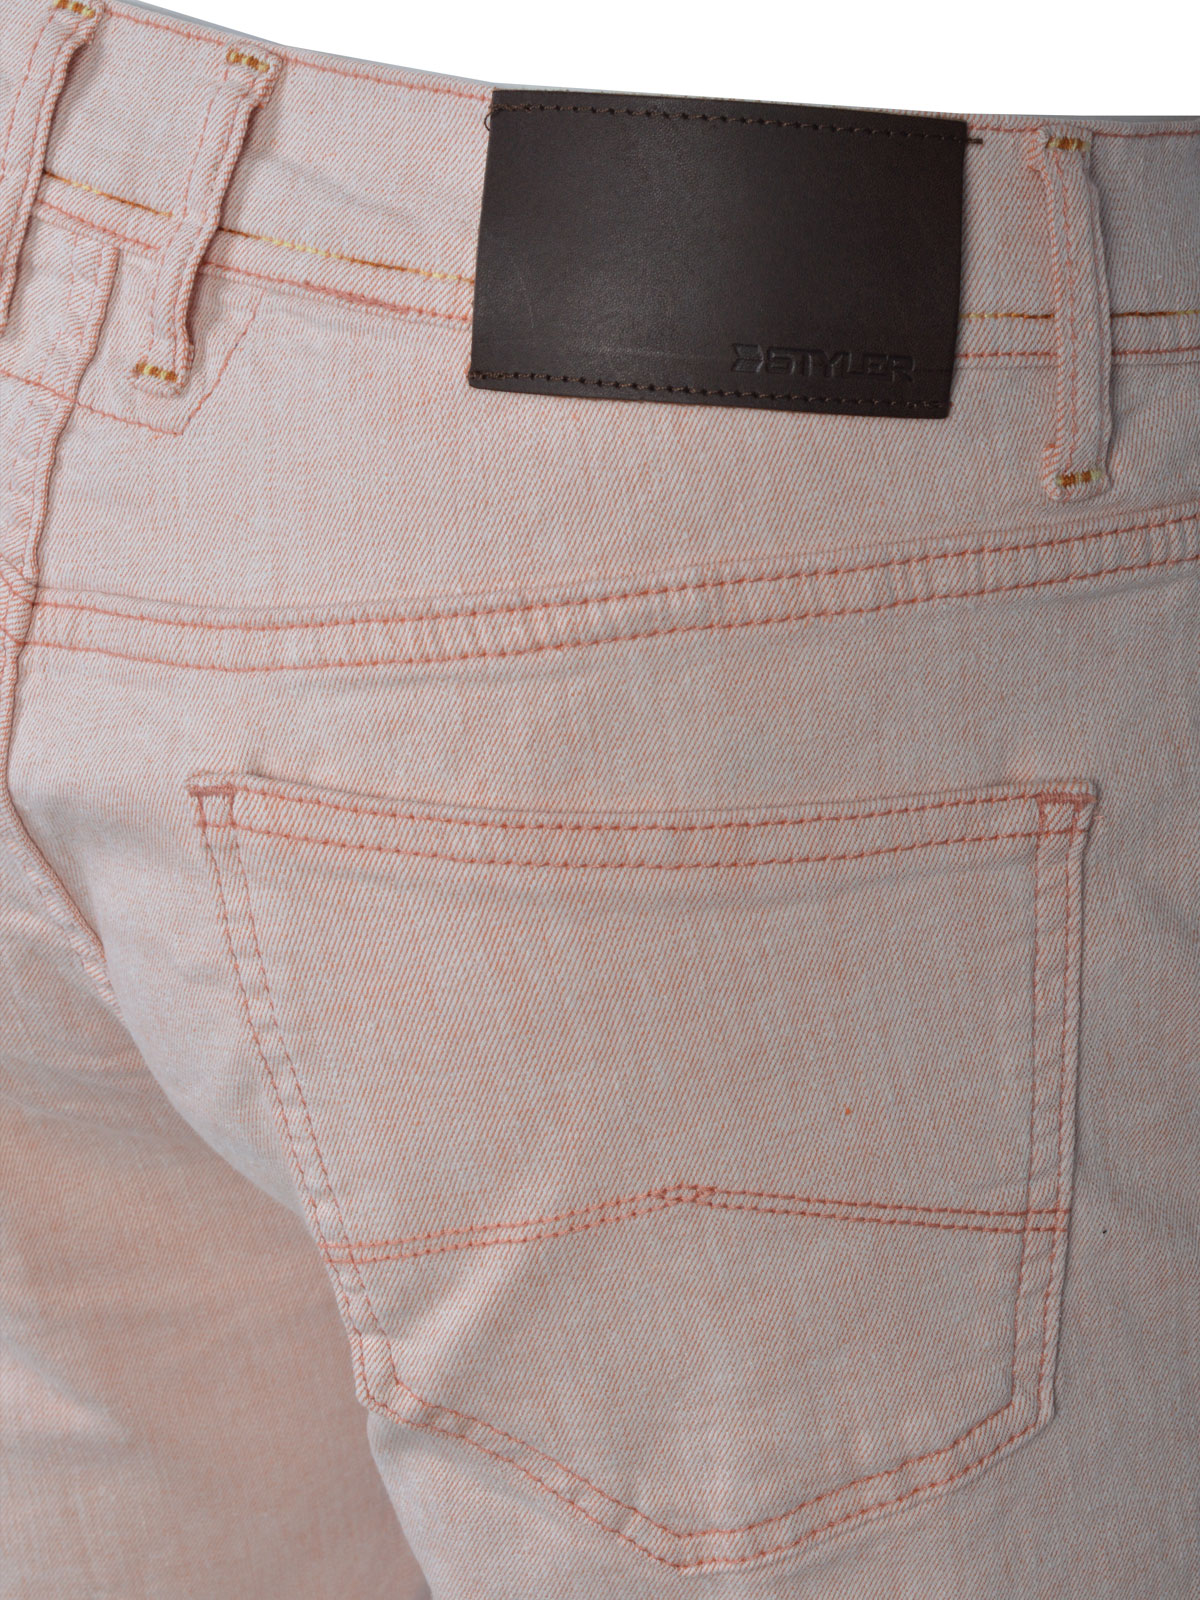 Τζιν παντελόνι σε απαλό ροζ - 67066 € 52.87 img3